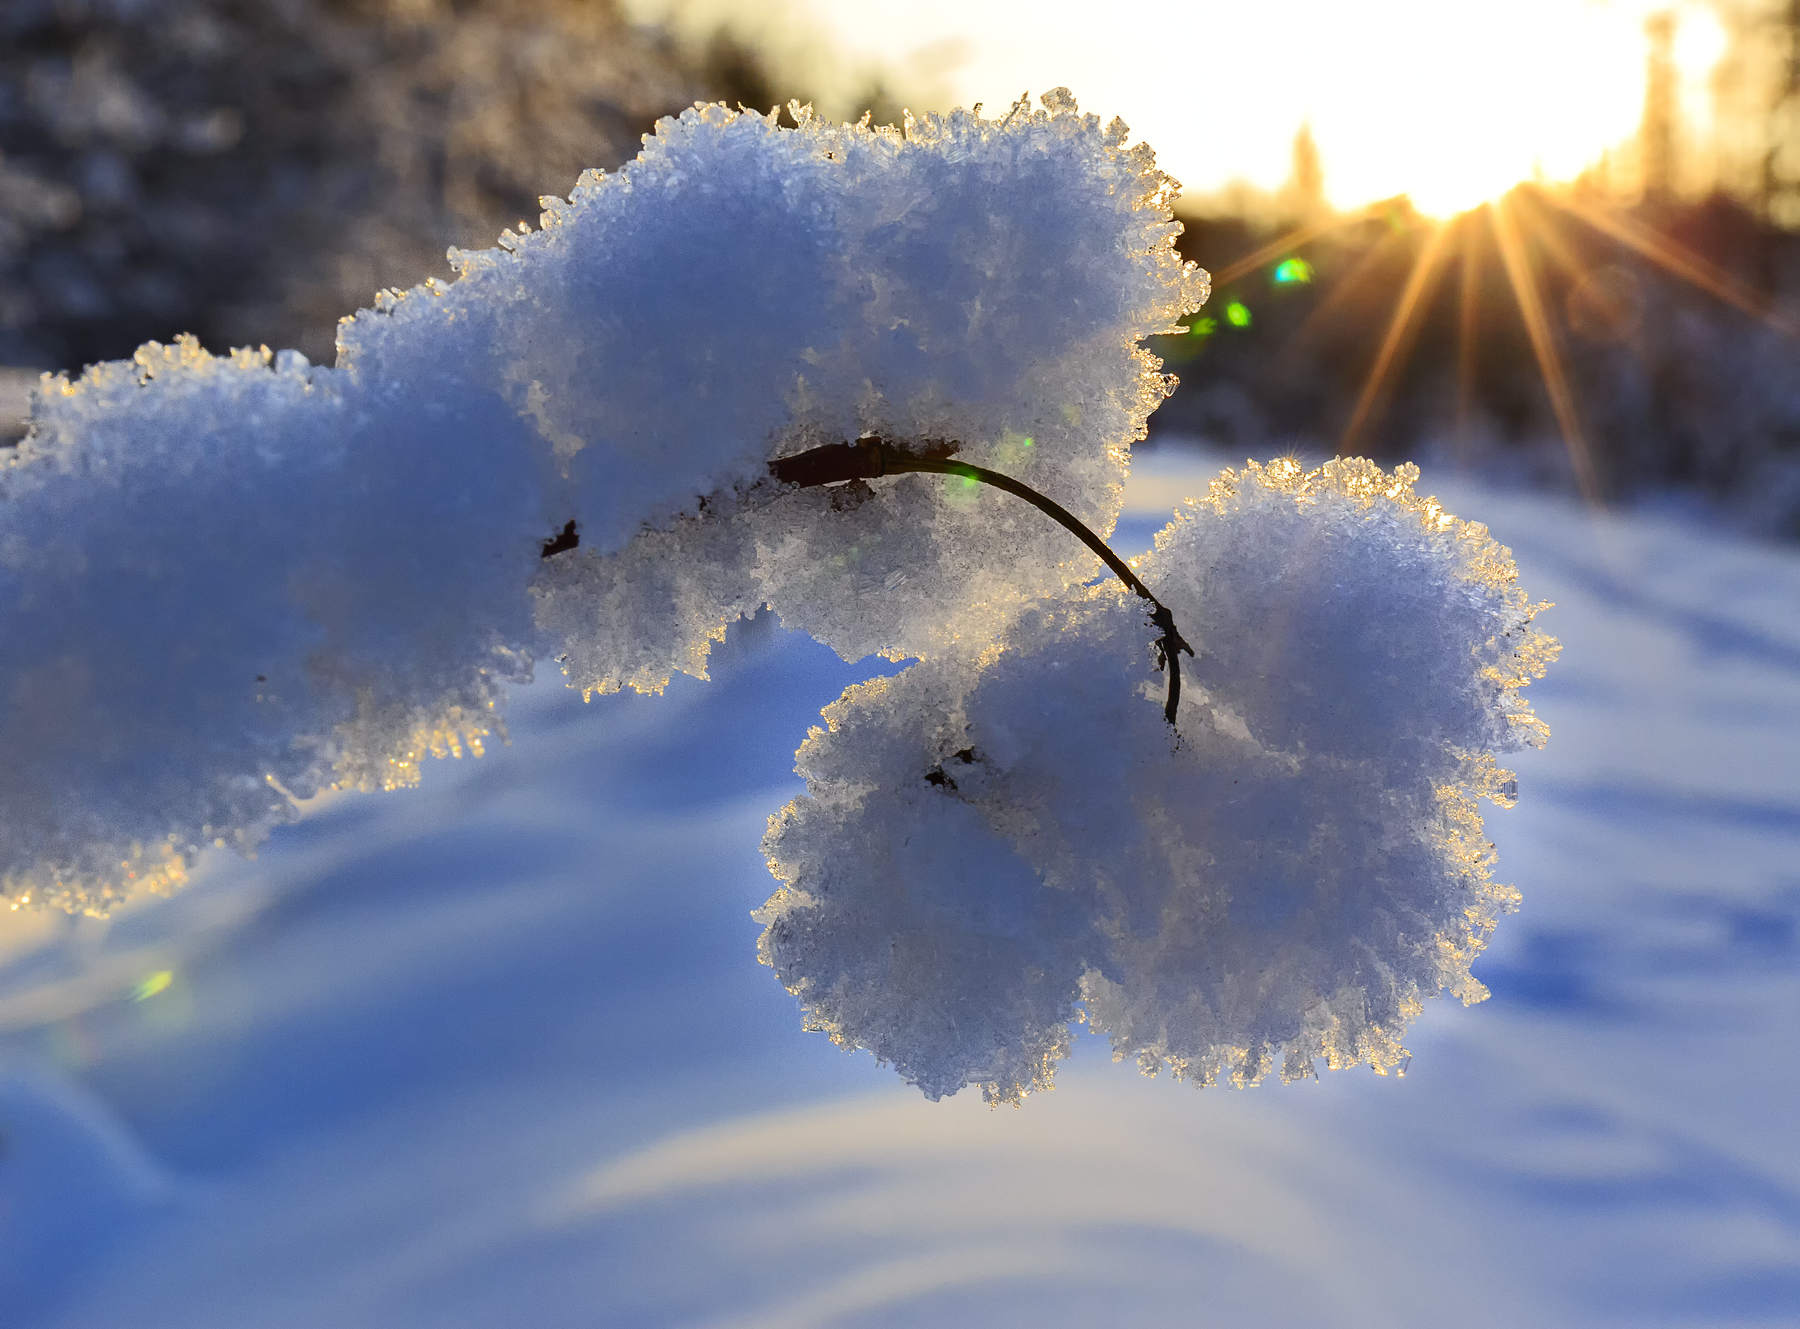  Ветка в снегу. Фотограф Михаил Байбородин